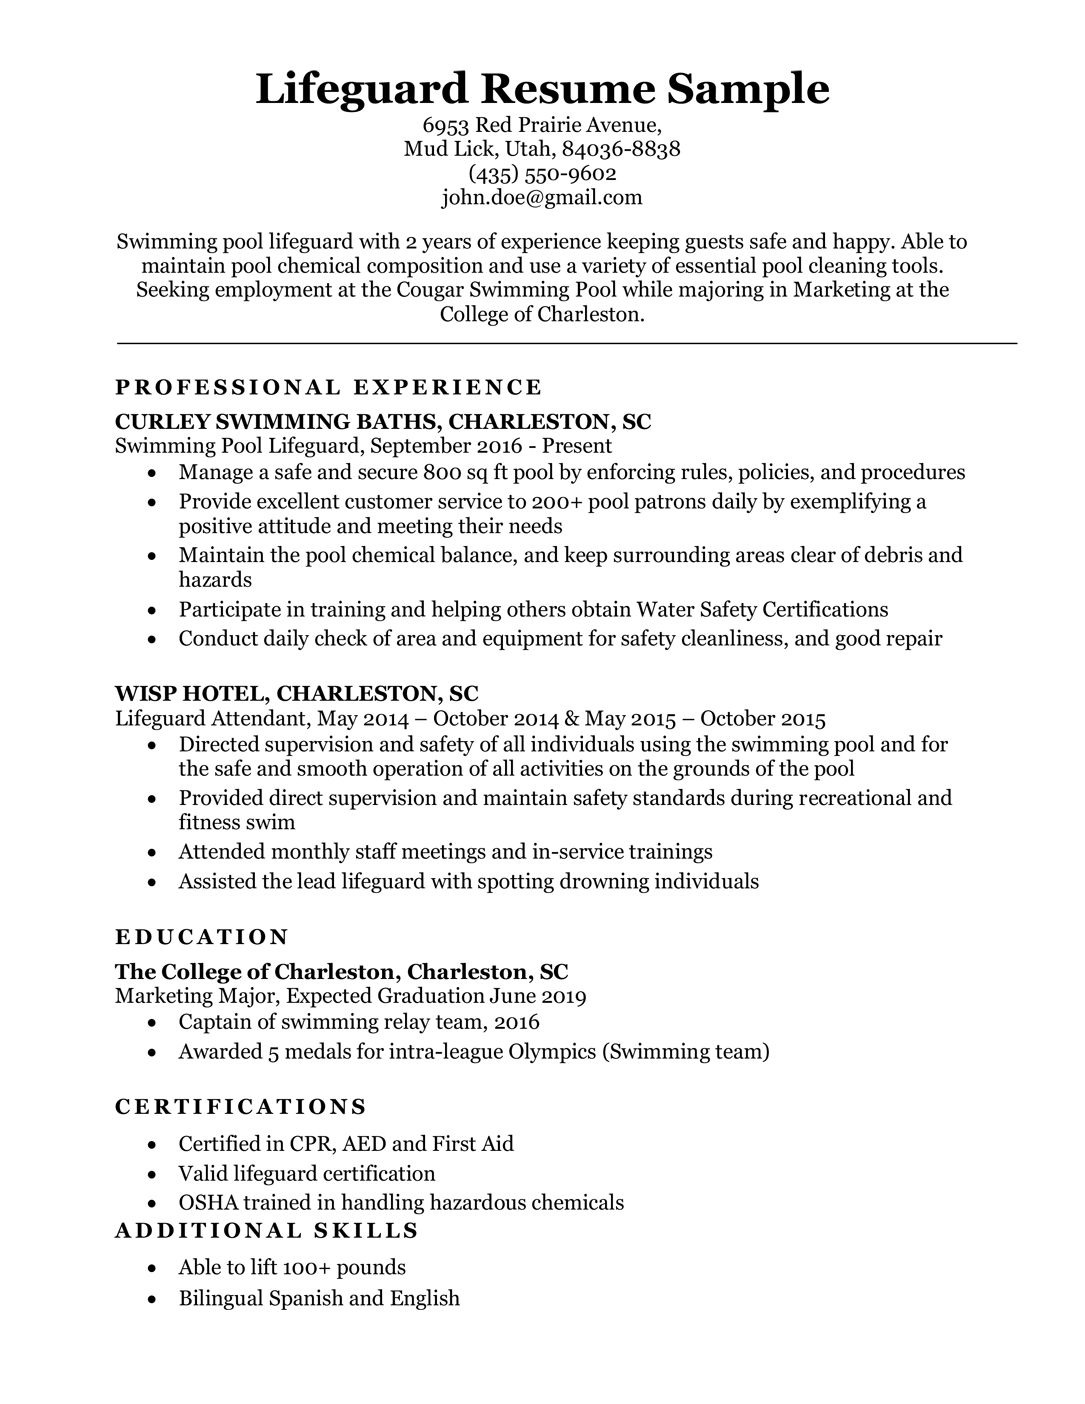 Lifeguard resume sample